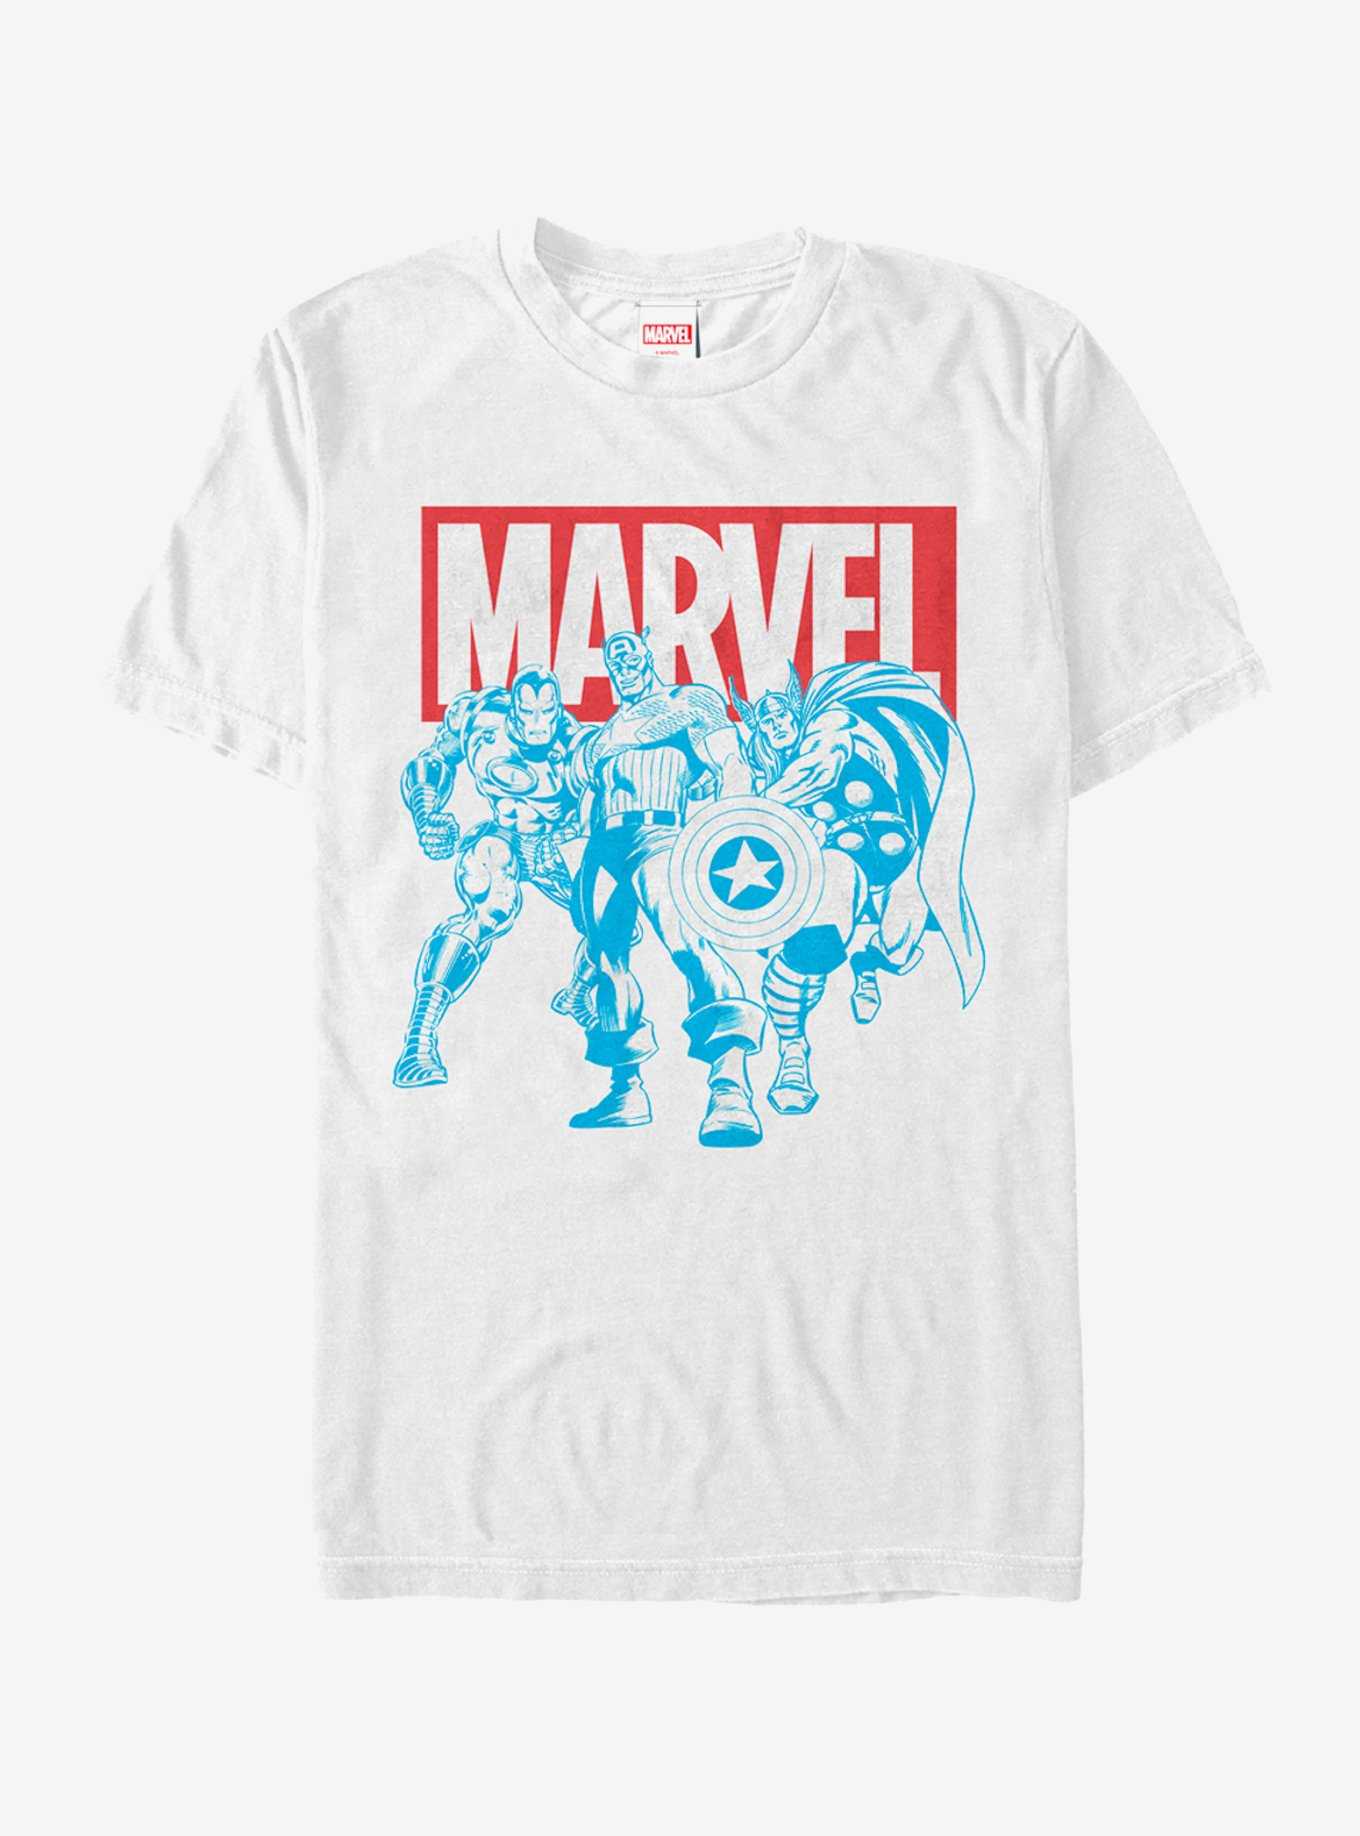 Marvel Avengers Stance T-Shirt, , hi-res